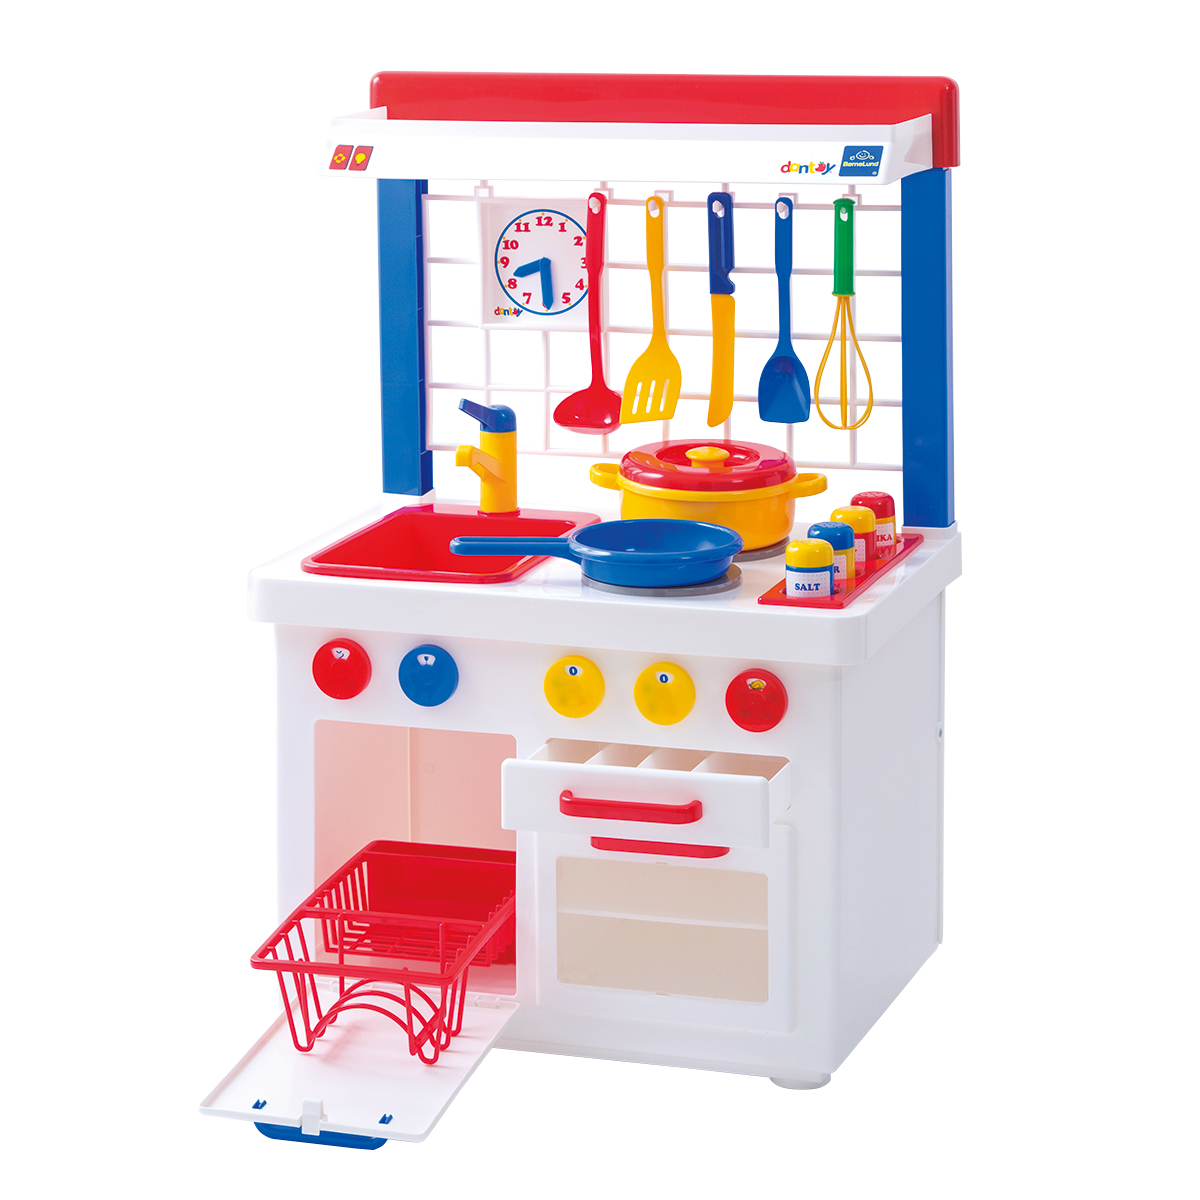 キッチンセンター: ボーネルンド オンラインショップ。世界中の知育玩具など、あそび道具がたくさん。0歳からのお子様へのプレゼントにも。